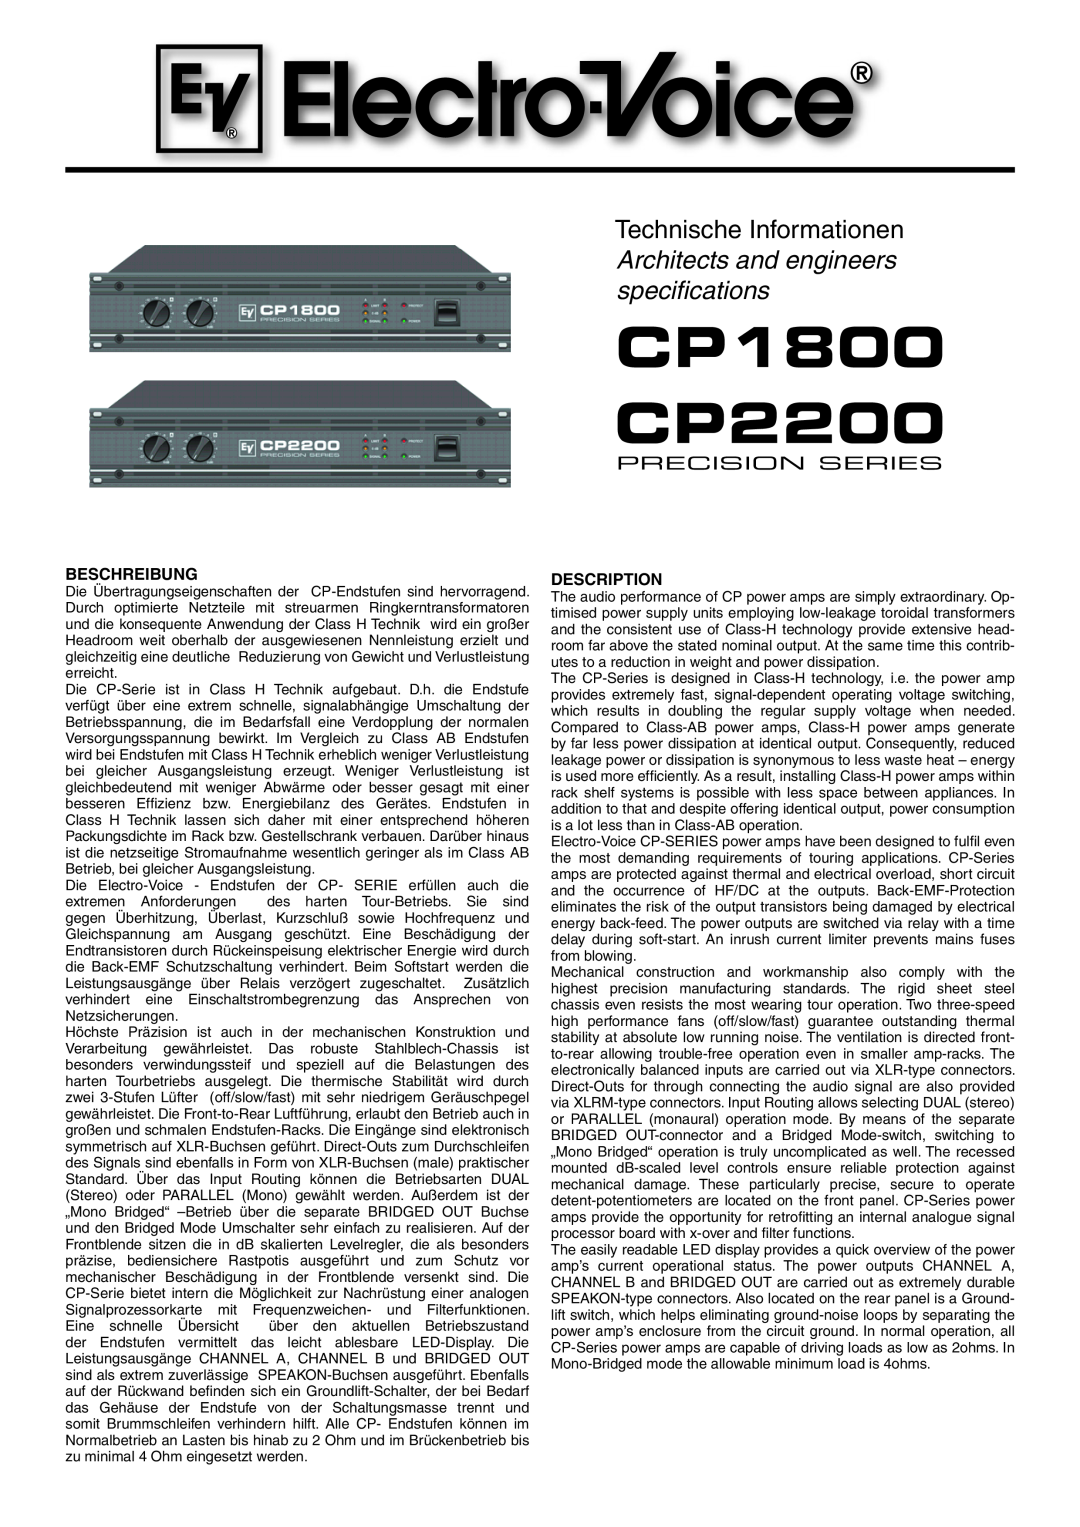 Electro-Voice CP2200, CP1800 manual Beschreibung, Description 